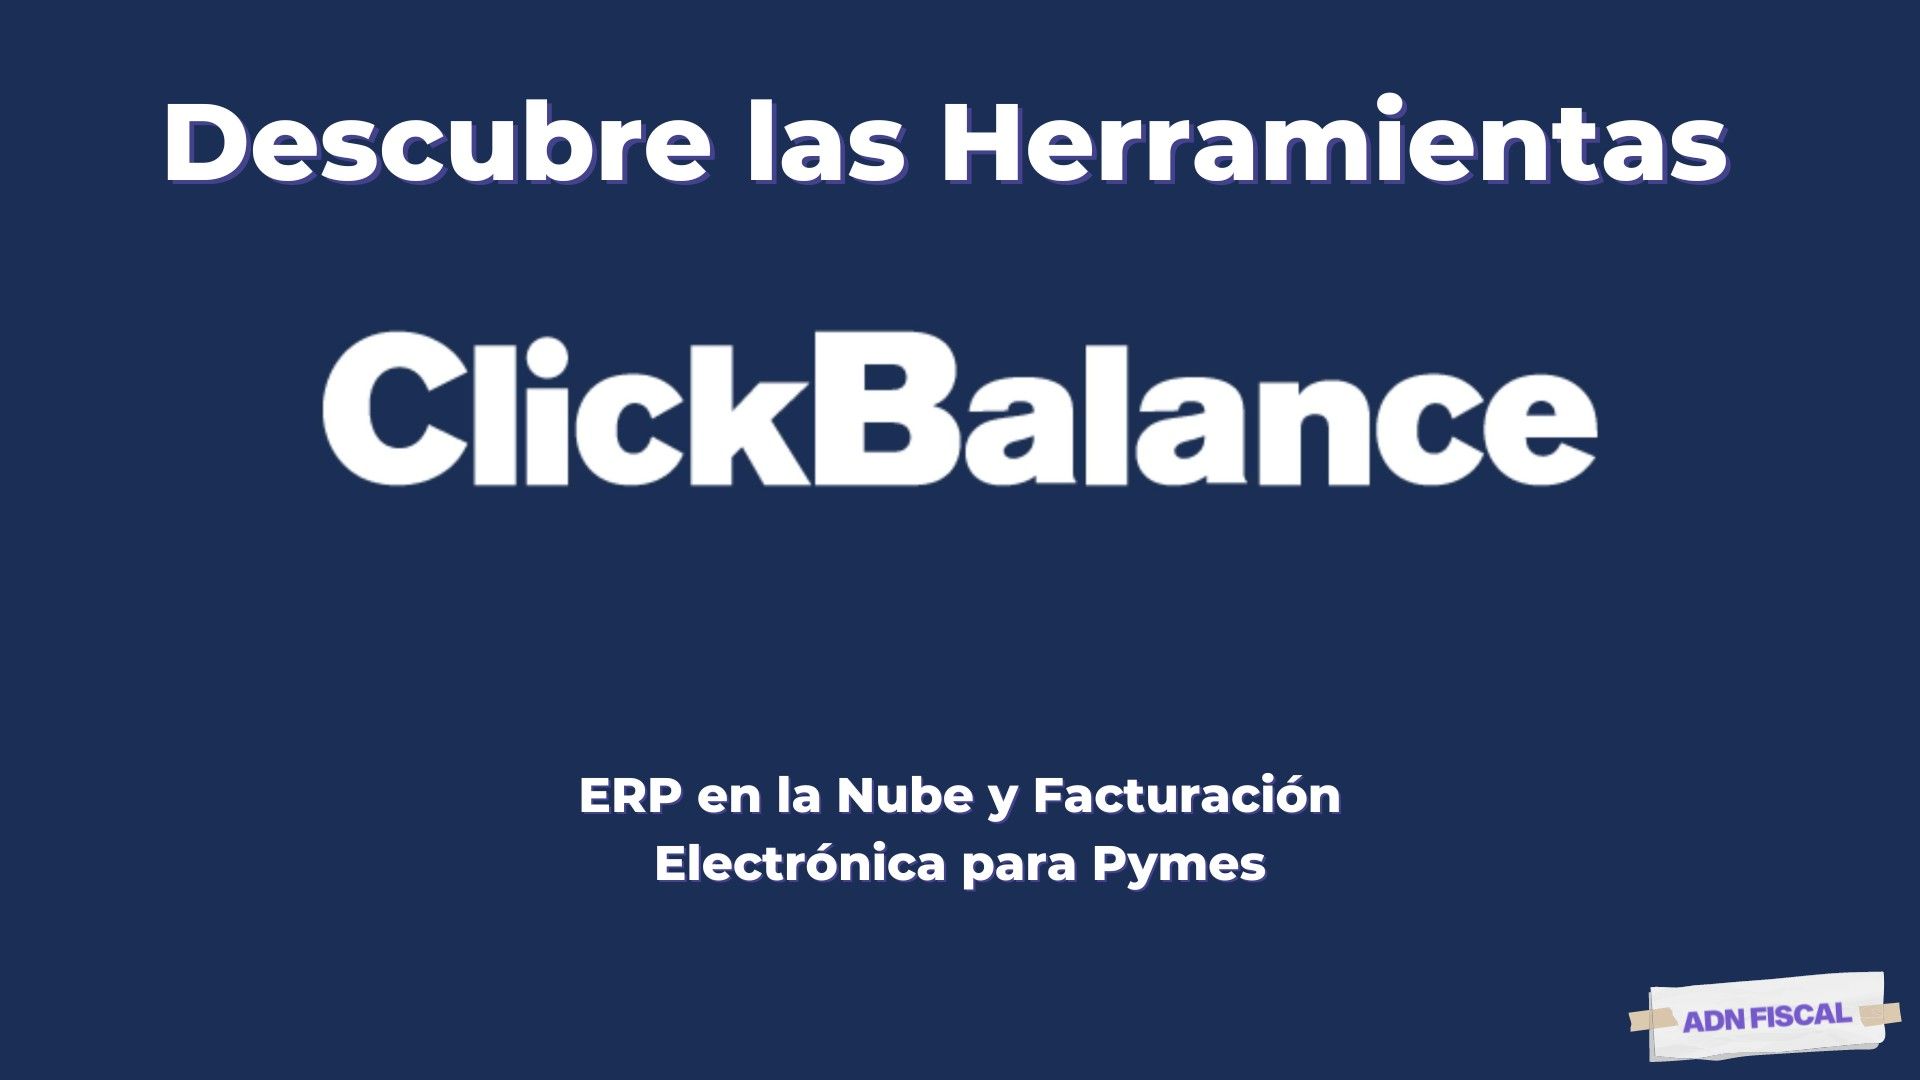 ClickBalance erp para pymes y facturacion electronica Factura Electrónica ADN Fiscal